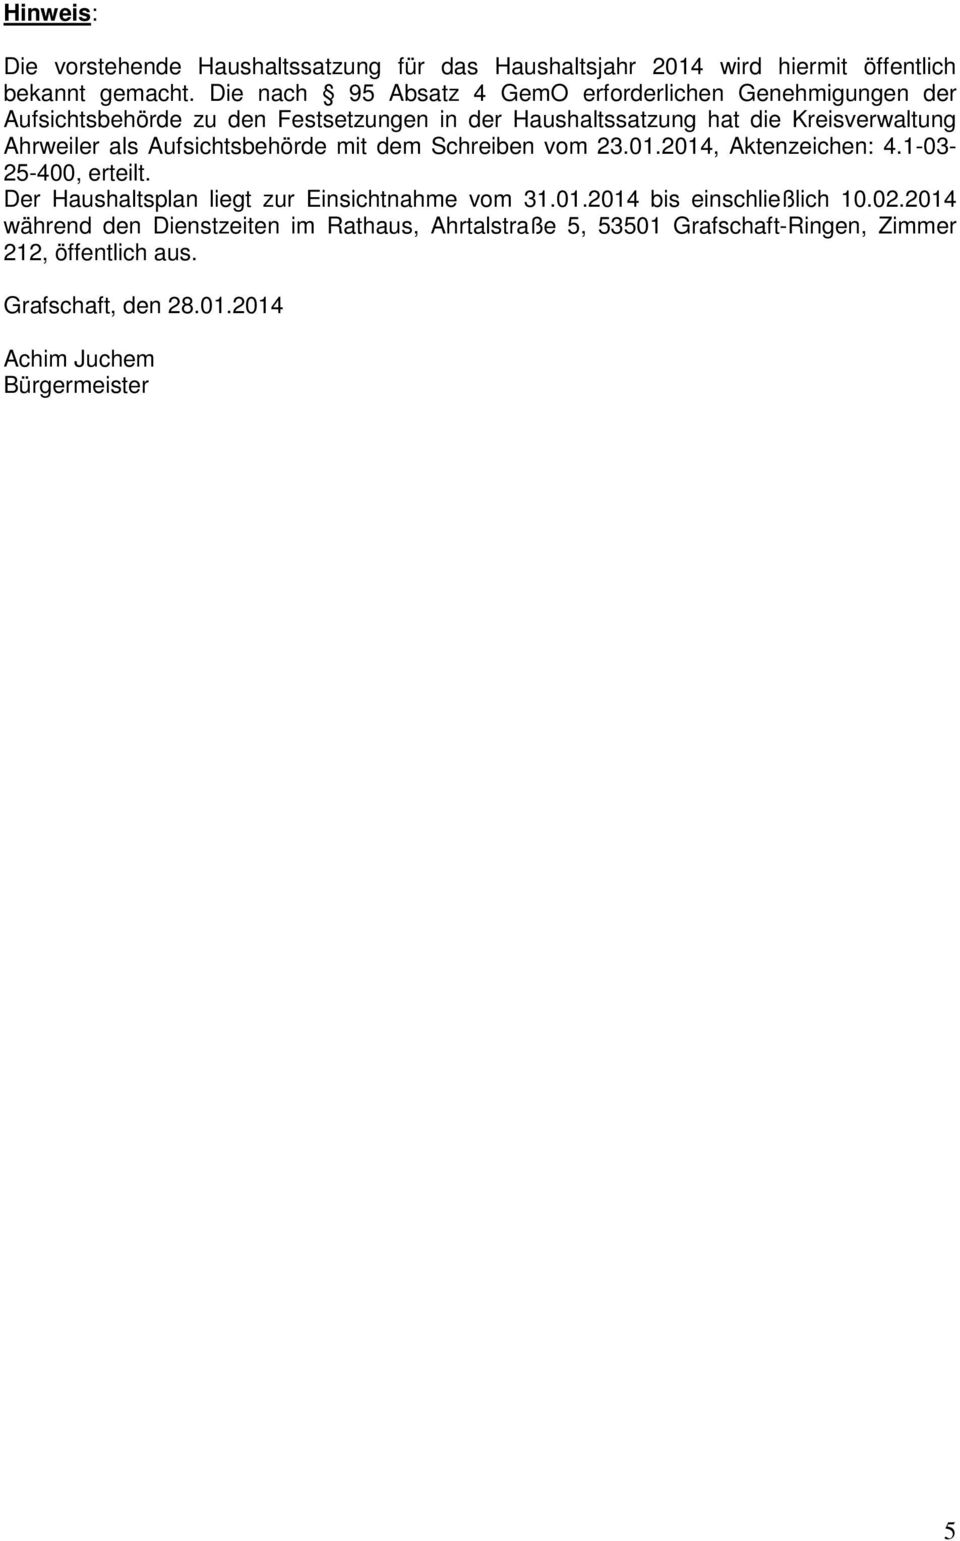 Ahrweiler als Aufsichtsbehörde mit dem Schreiben vom 23.01.2014, Aktenzeichen: 4.1-03- 25-400, erteilt.